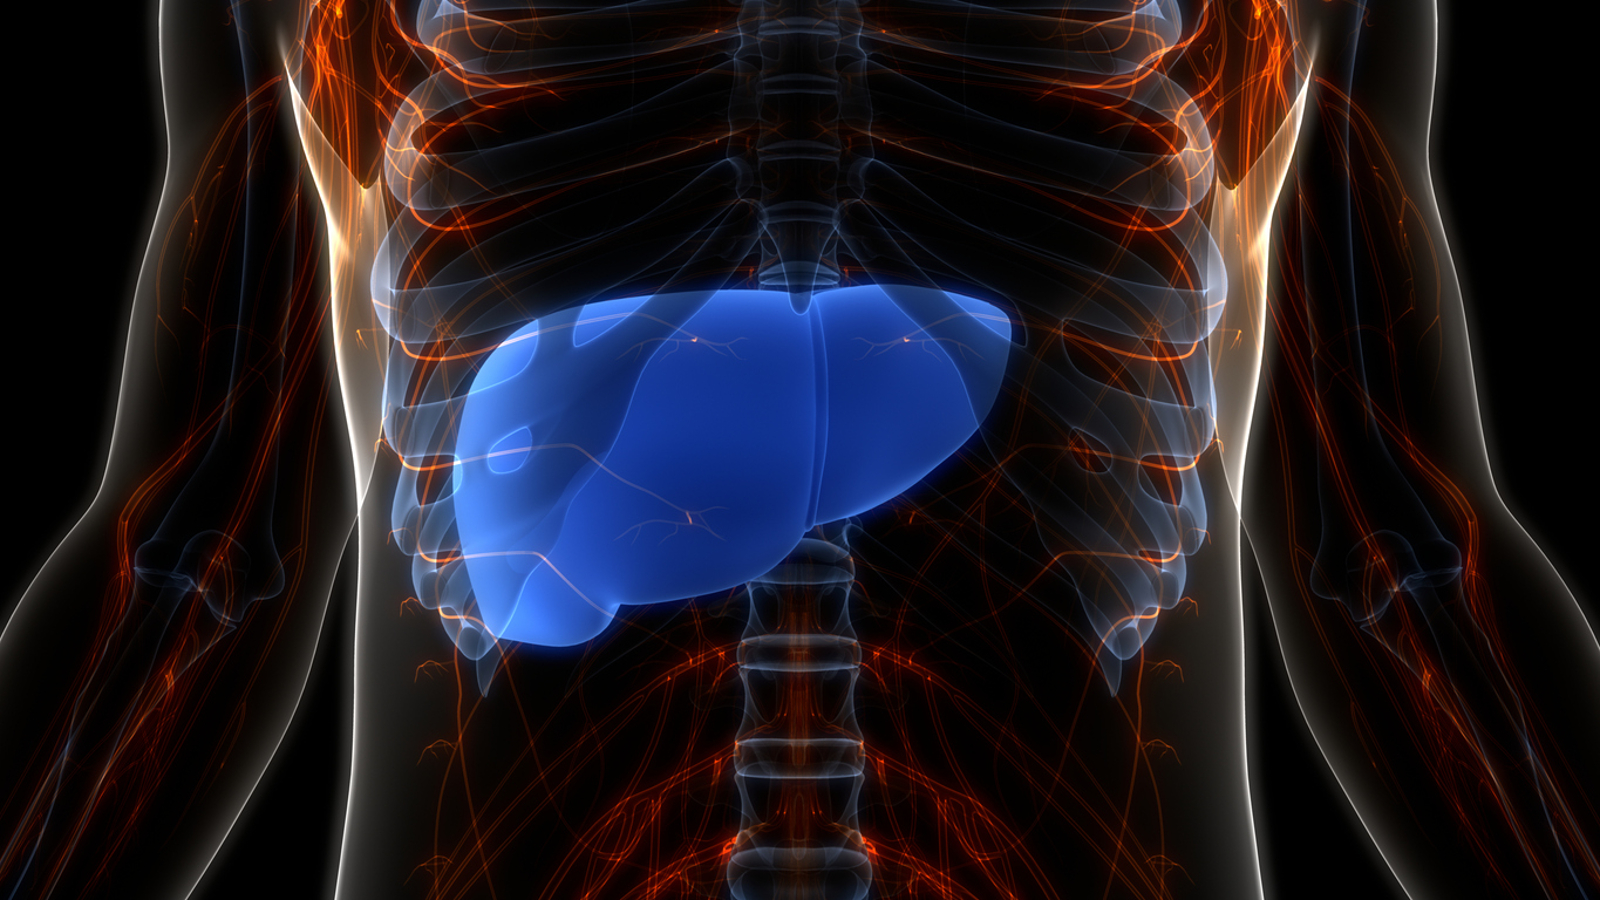 A gordura no fígado ocorre quando as células acumulam excesso de gordura, podendo levar a complicações de saúde